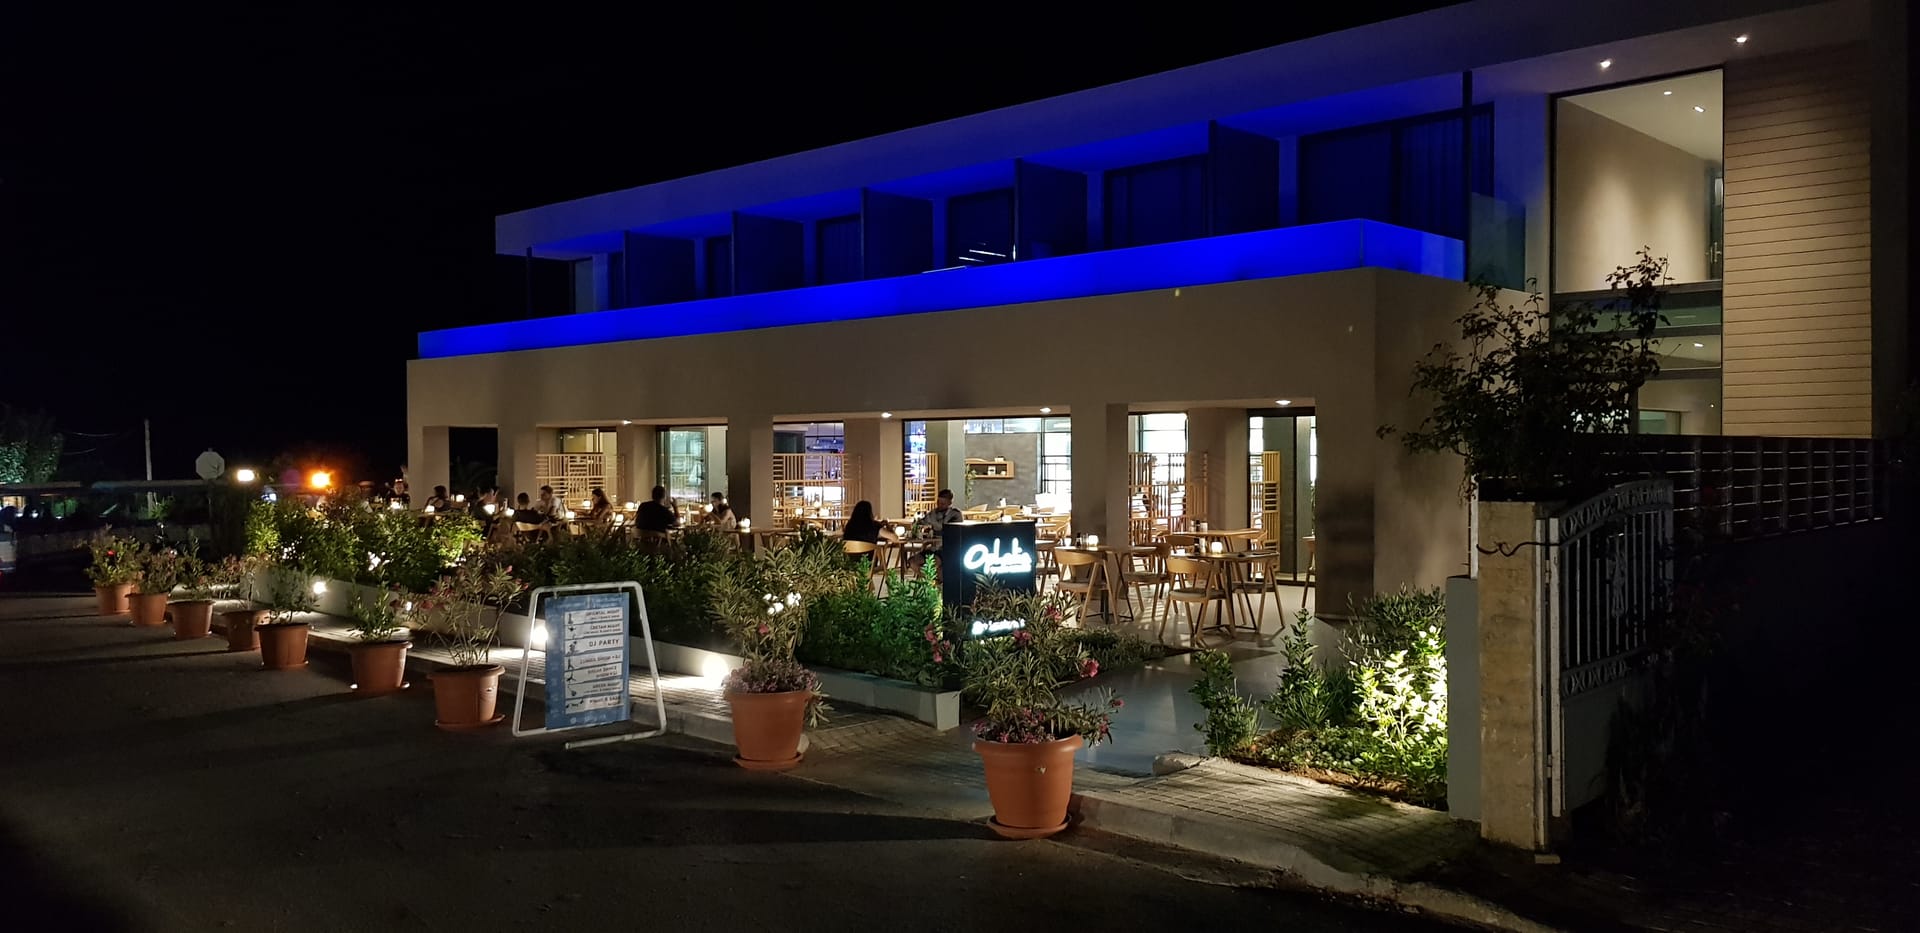 Cooee Corissia Harmony: Das griechische Hotel bietet griechische Küche an und punktet so bei seinen Gästen.